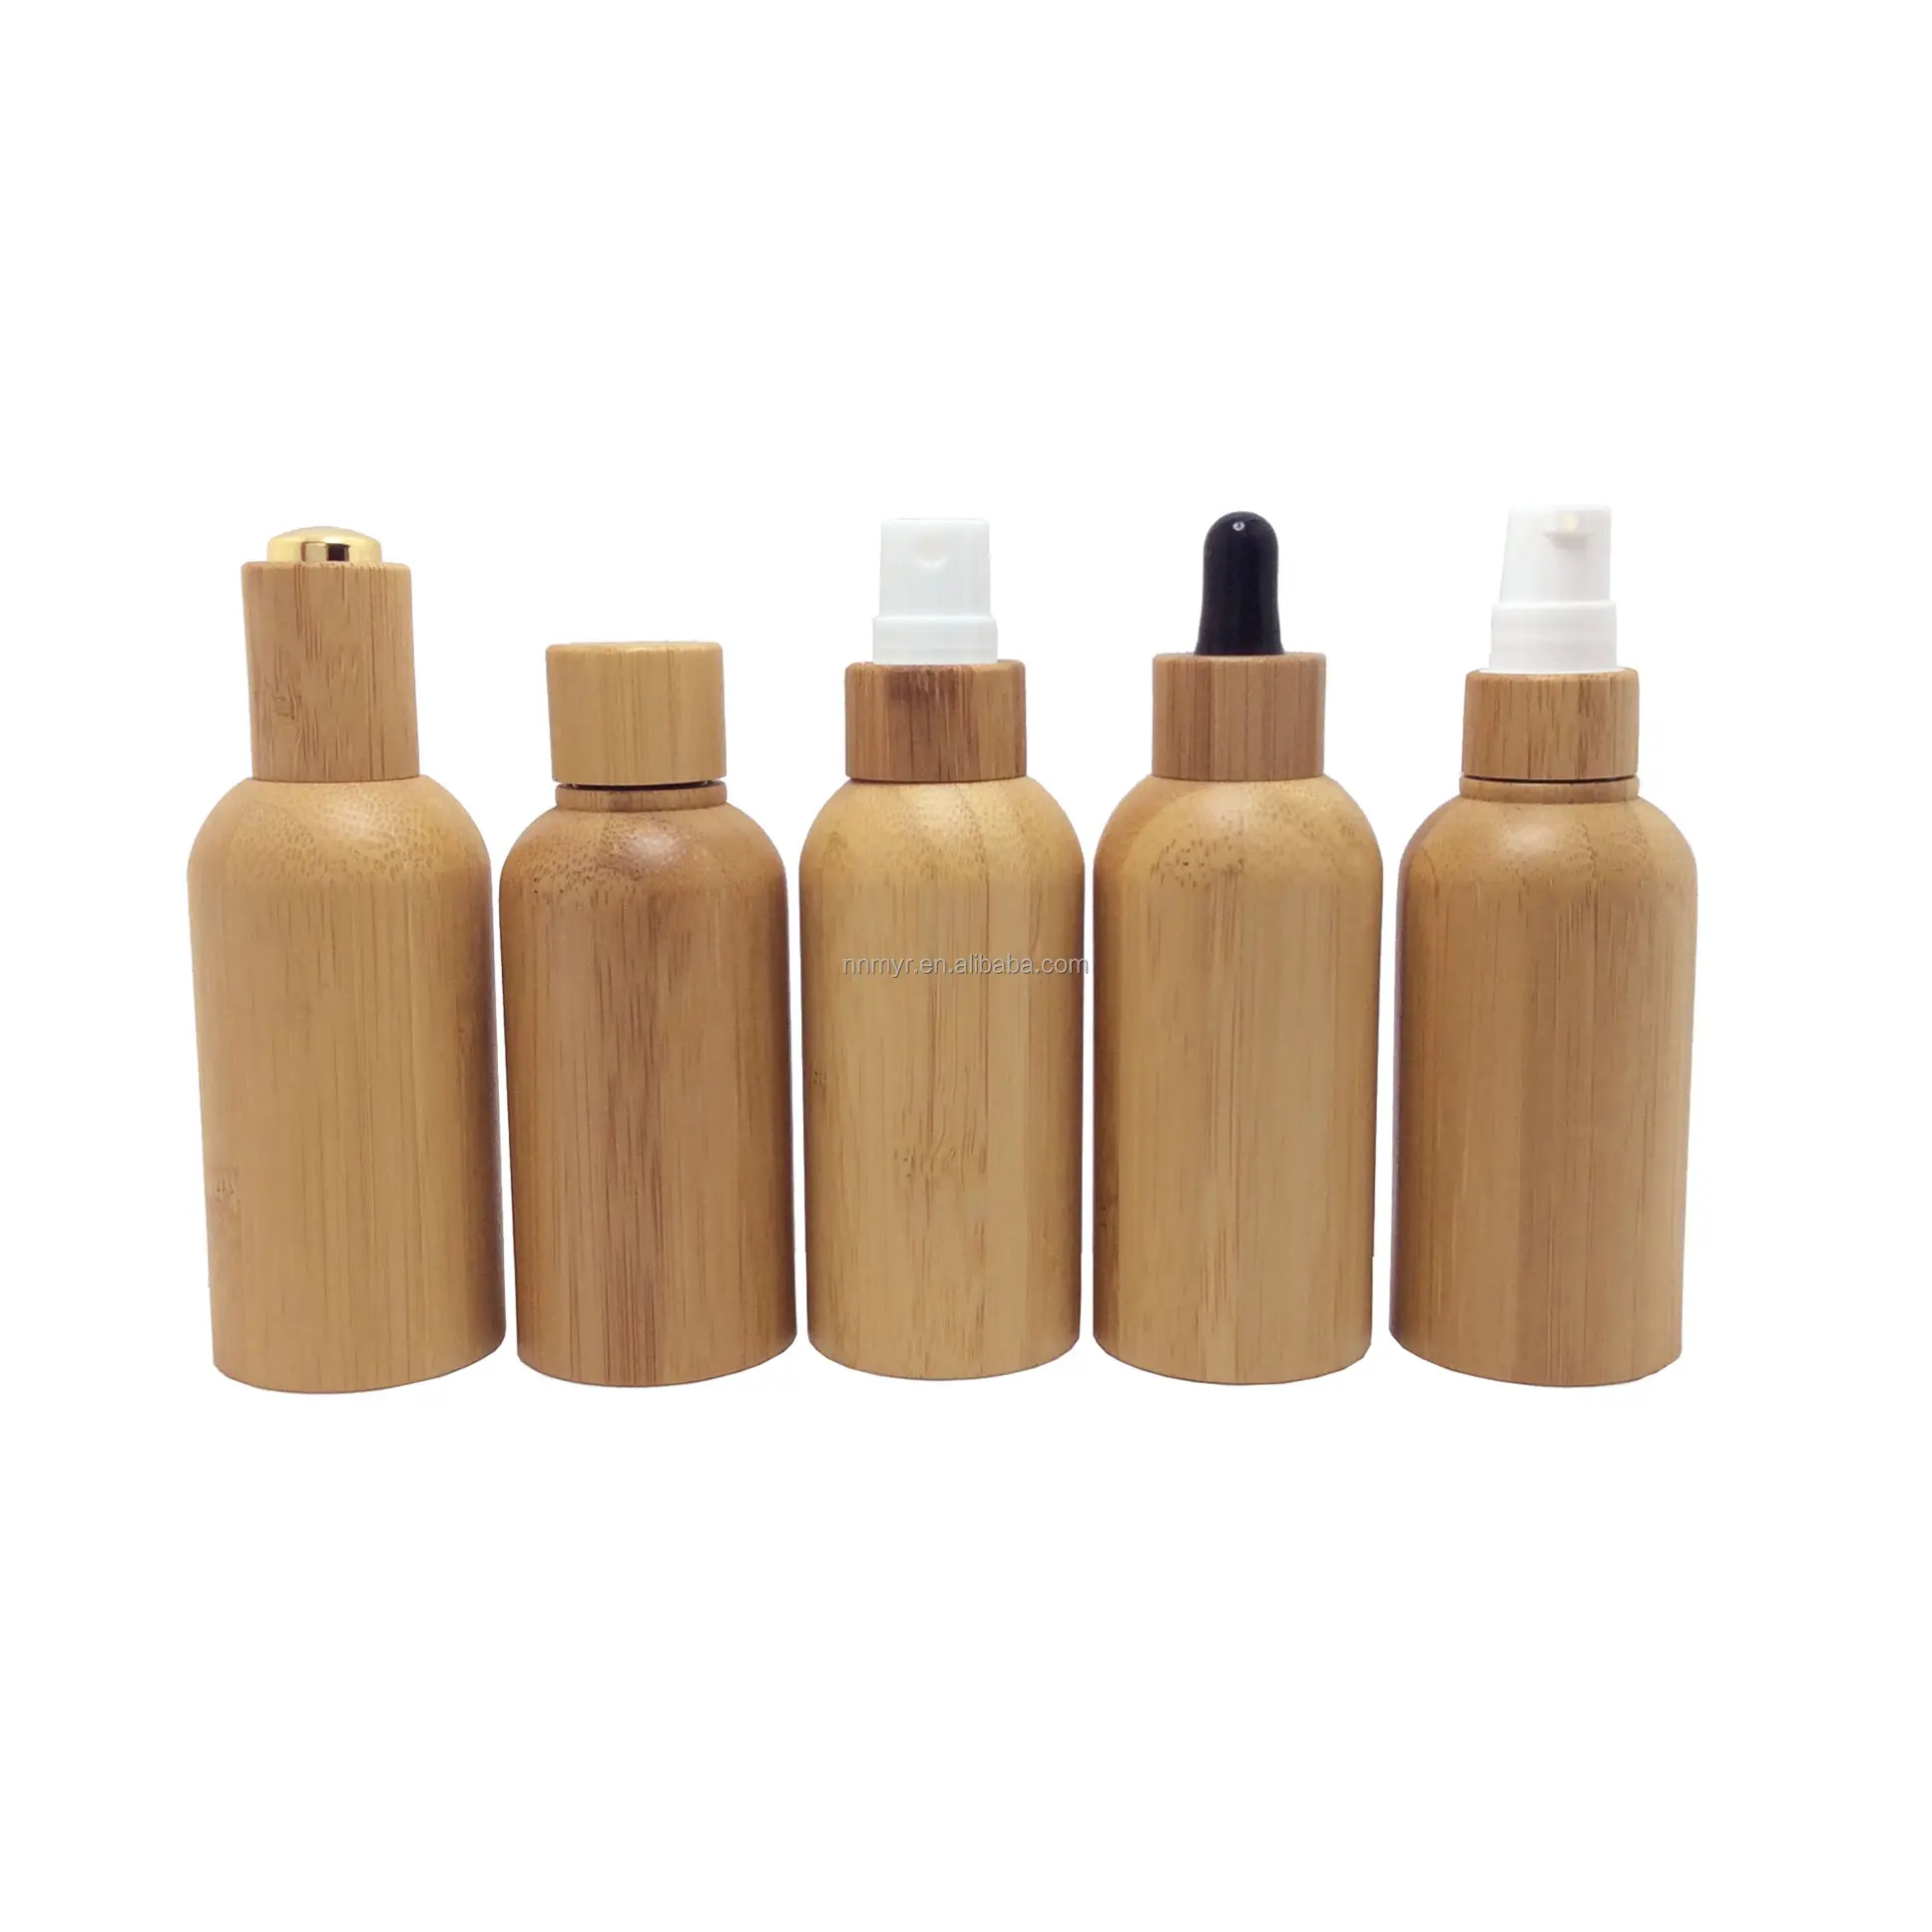 Producción personalizada del fabricante de 100% cajas de embalaje de bambú y madera biodegradables cajas de embalaje de cosméticos, joyero